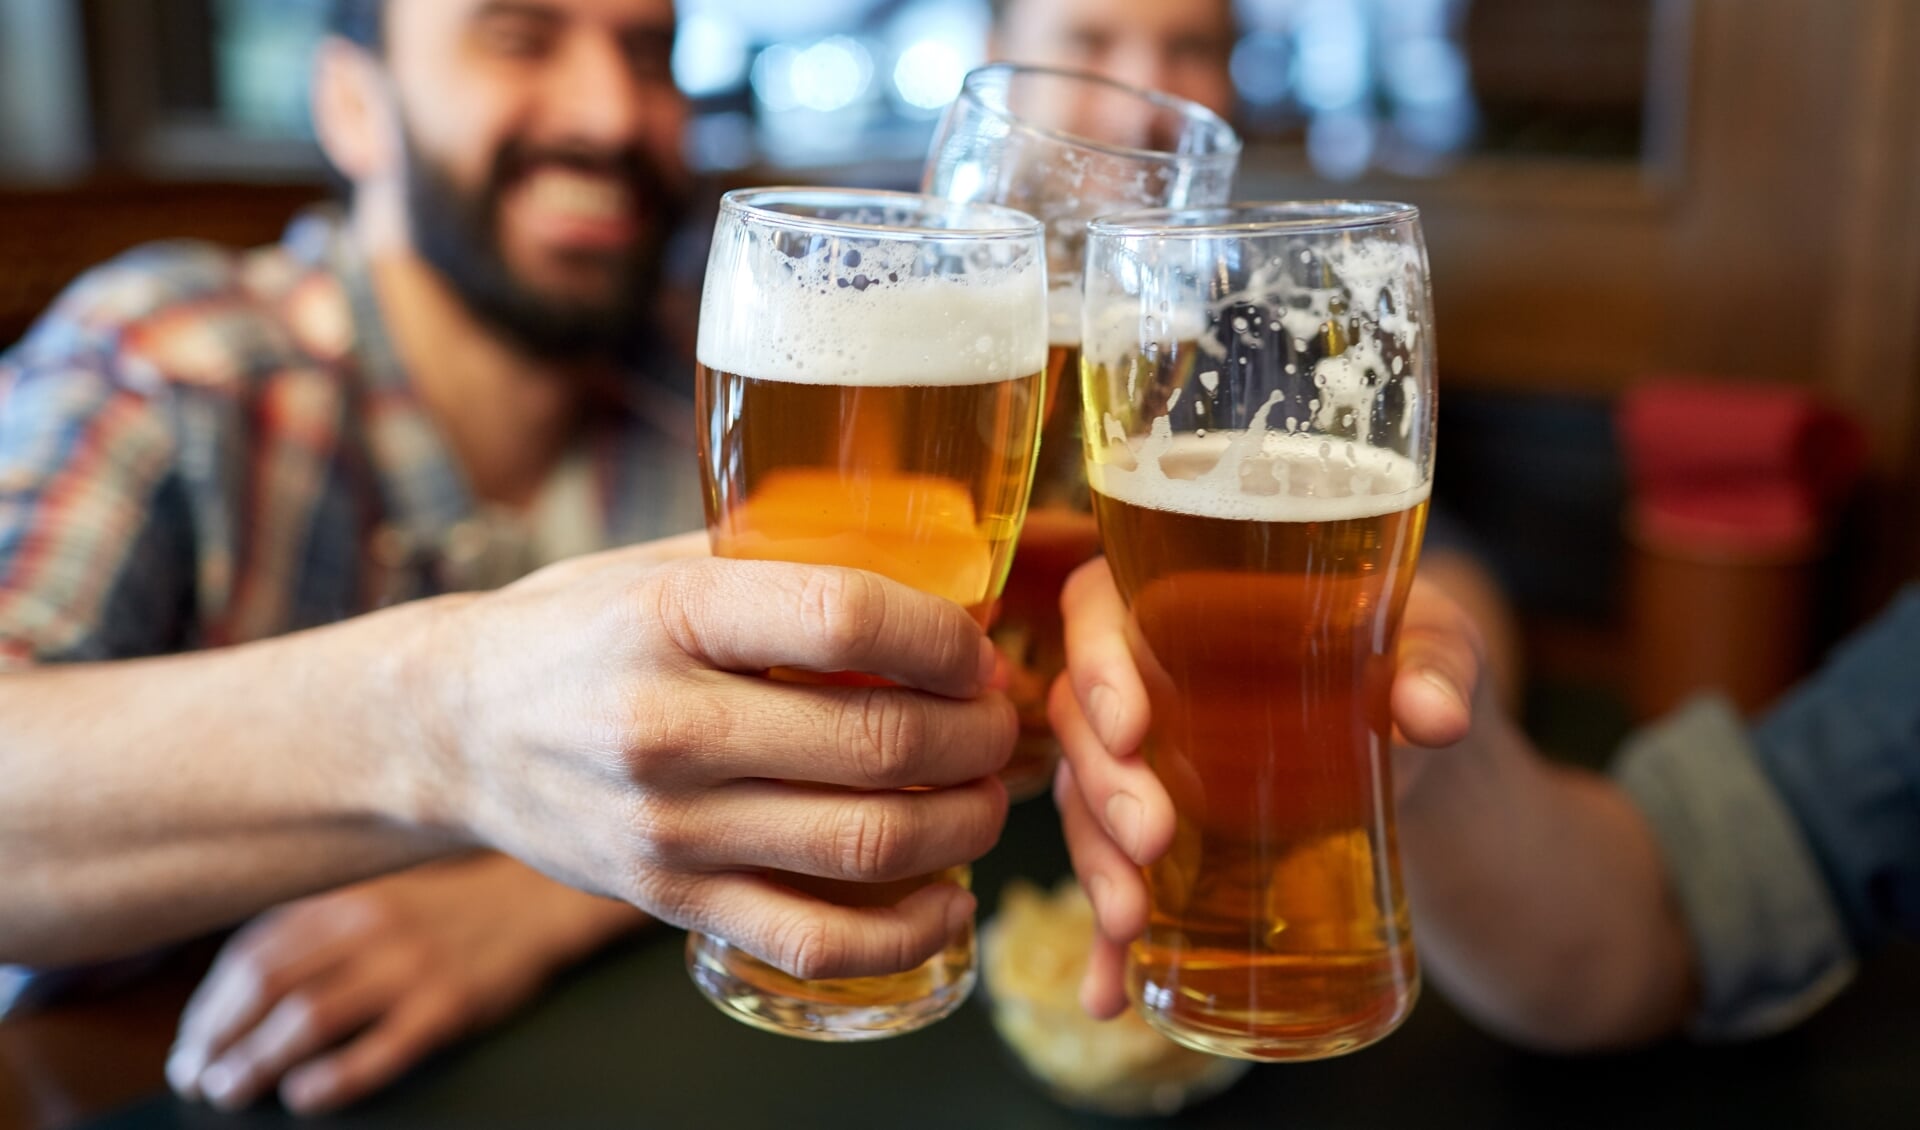 De bierconsumptie door de jaren heen is redelijk stabiel. Wel kiezen drinkers steeds vaker voor alcoholvrij en alcoholarm bier.